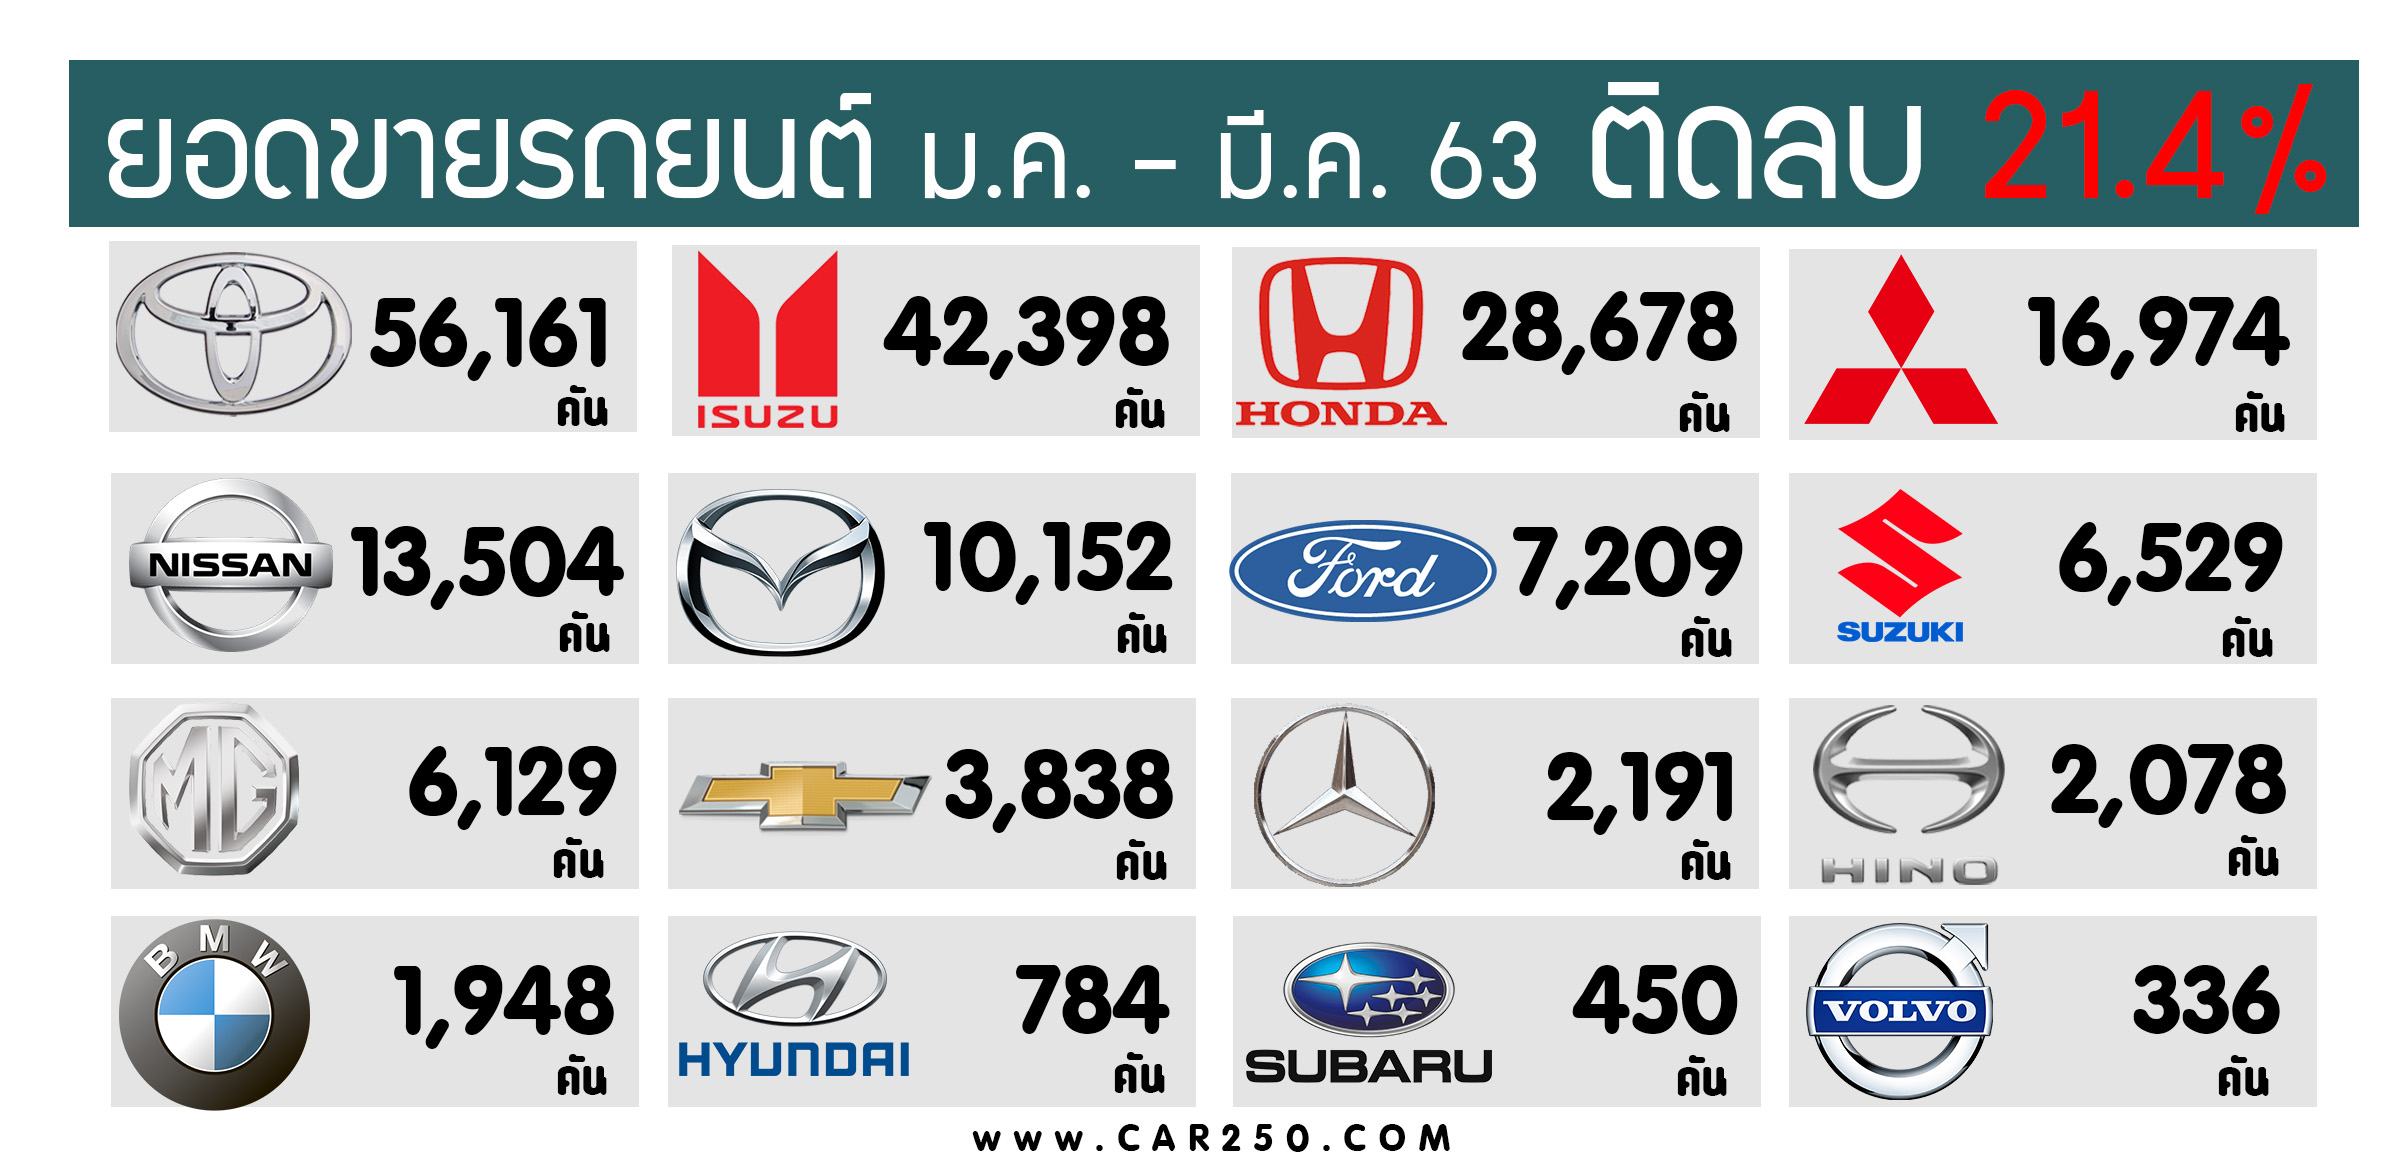 ยอดขายรถยนต์ ติดลบ 21.4% ในไทย ระหว่าง มกราคม – มีนาคม 2563 รวม 200,064 คัน (ไตรมาสแรก)